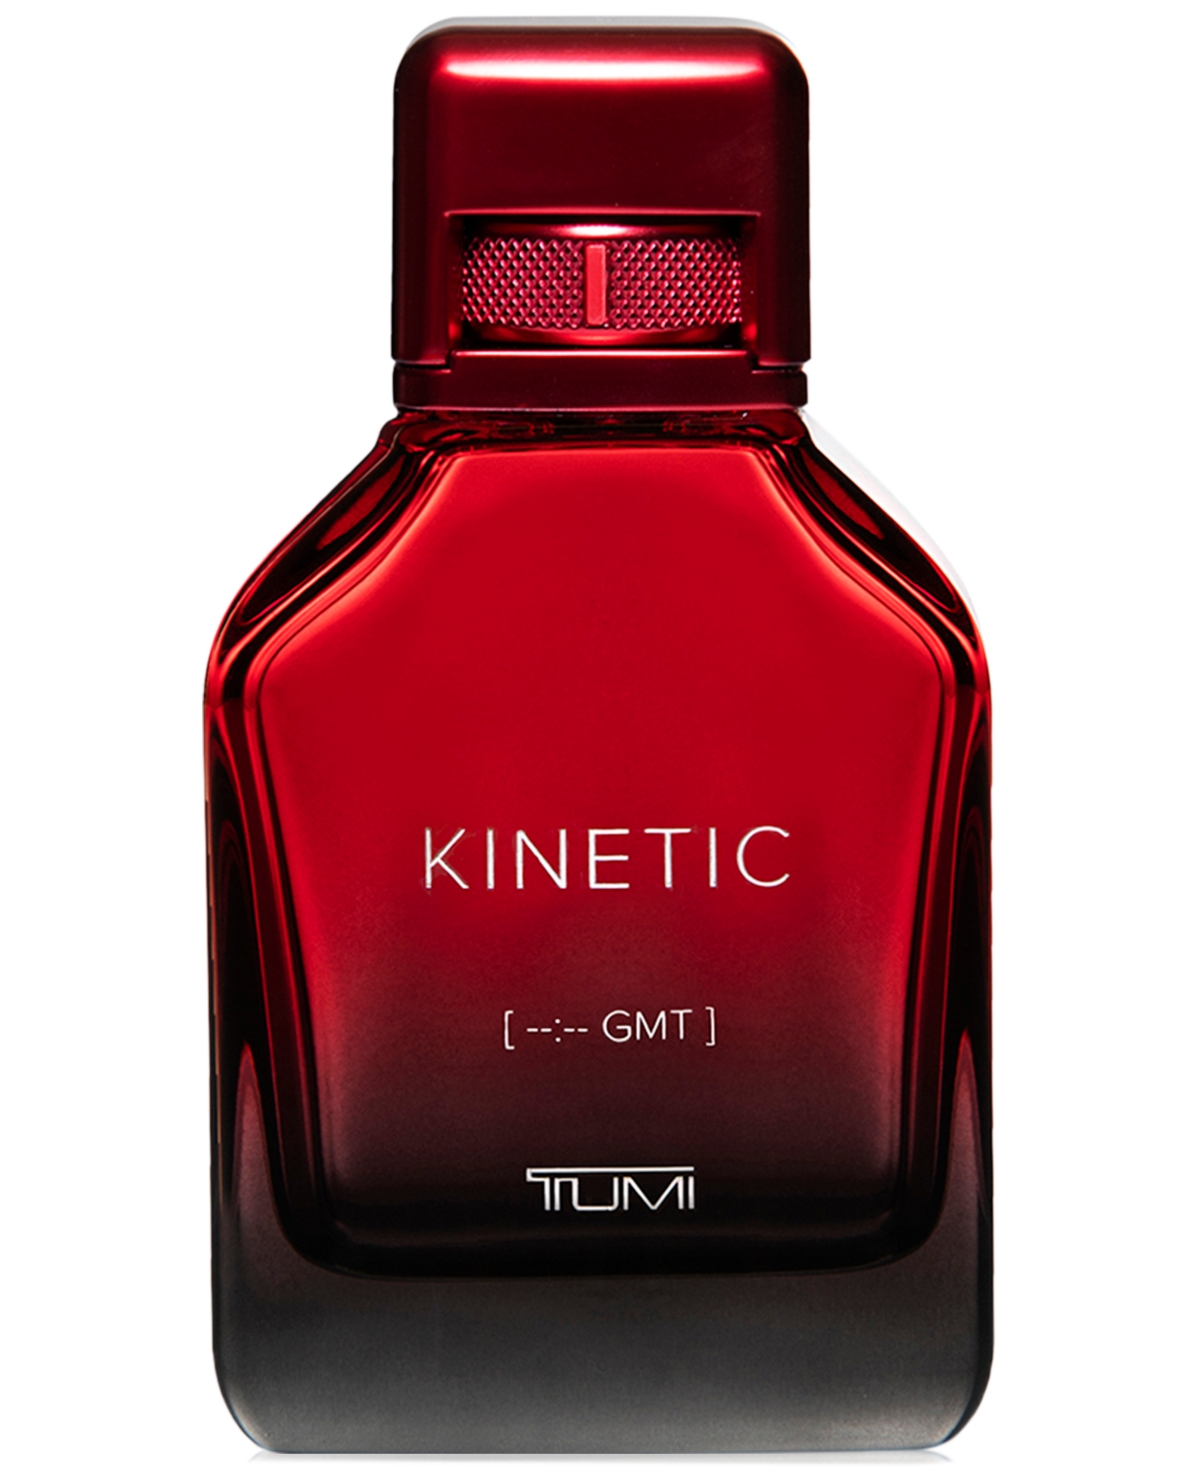 Men's Kinetic [--:-- Gmt] Eau de Parfum Spray, 3.4 oz.